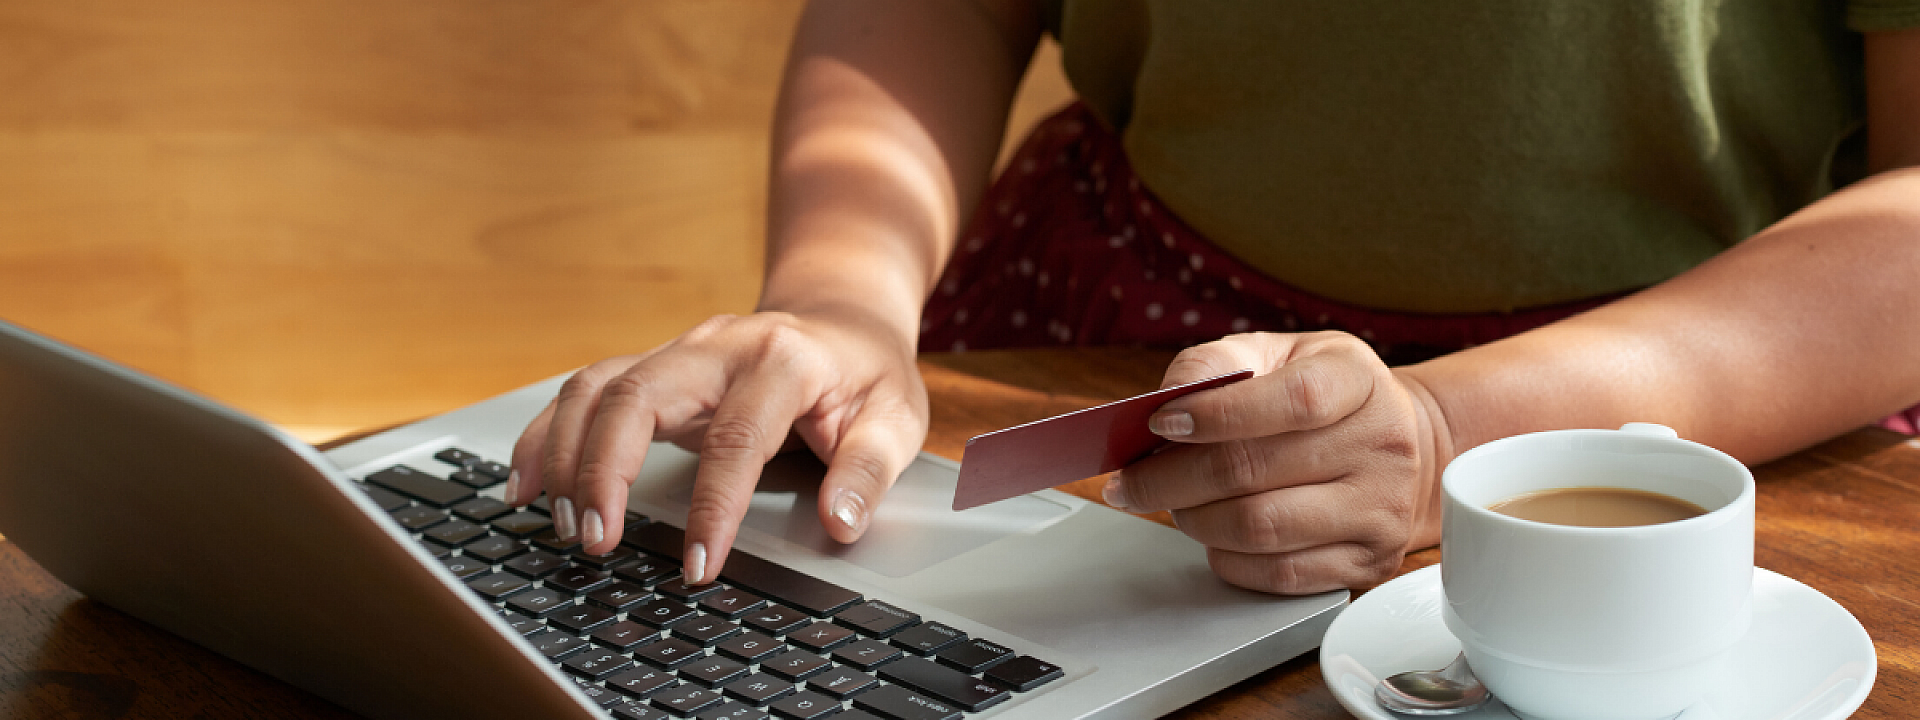 une personne faisant des achats en ligne avec sa carte de crédit